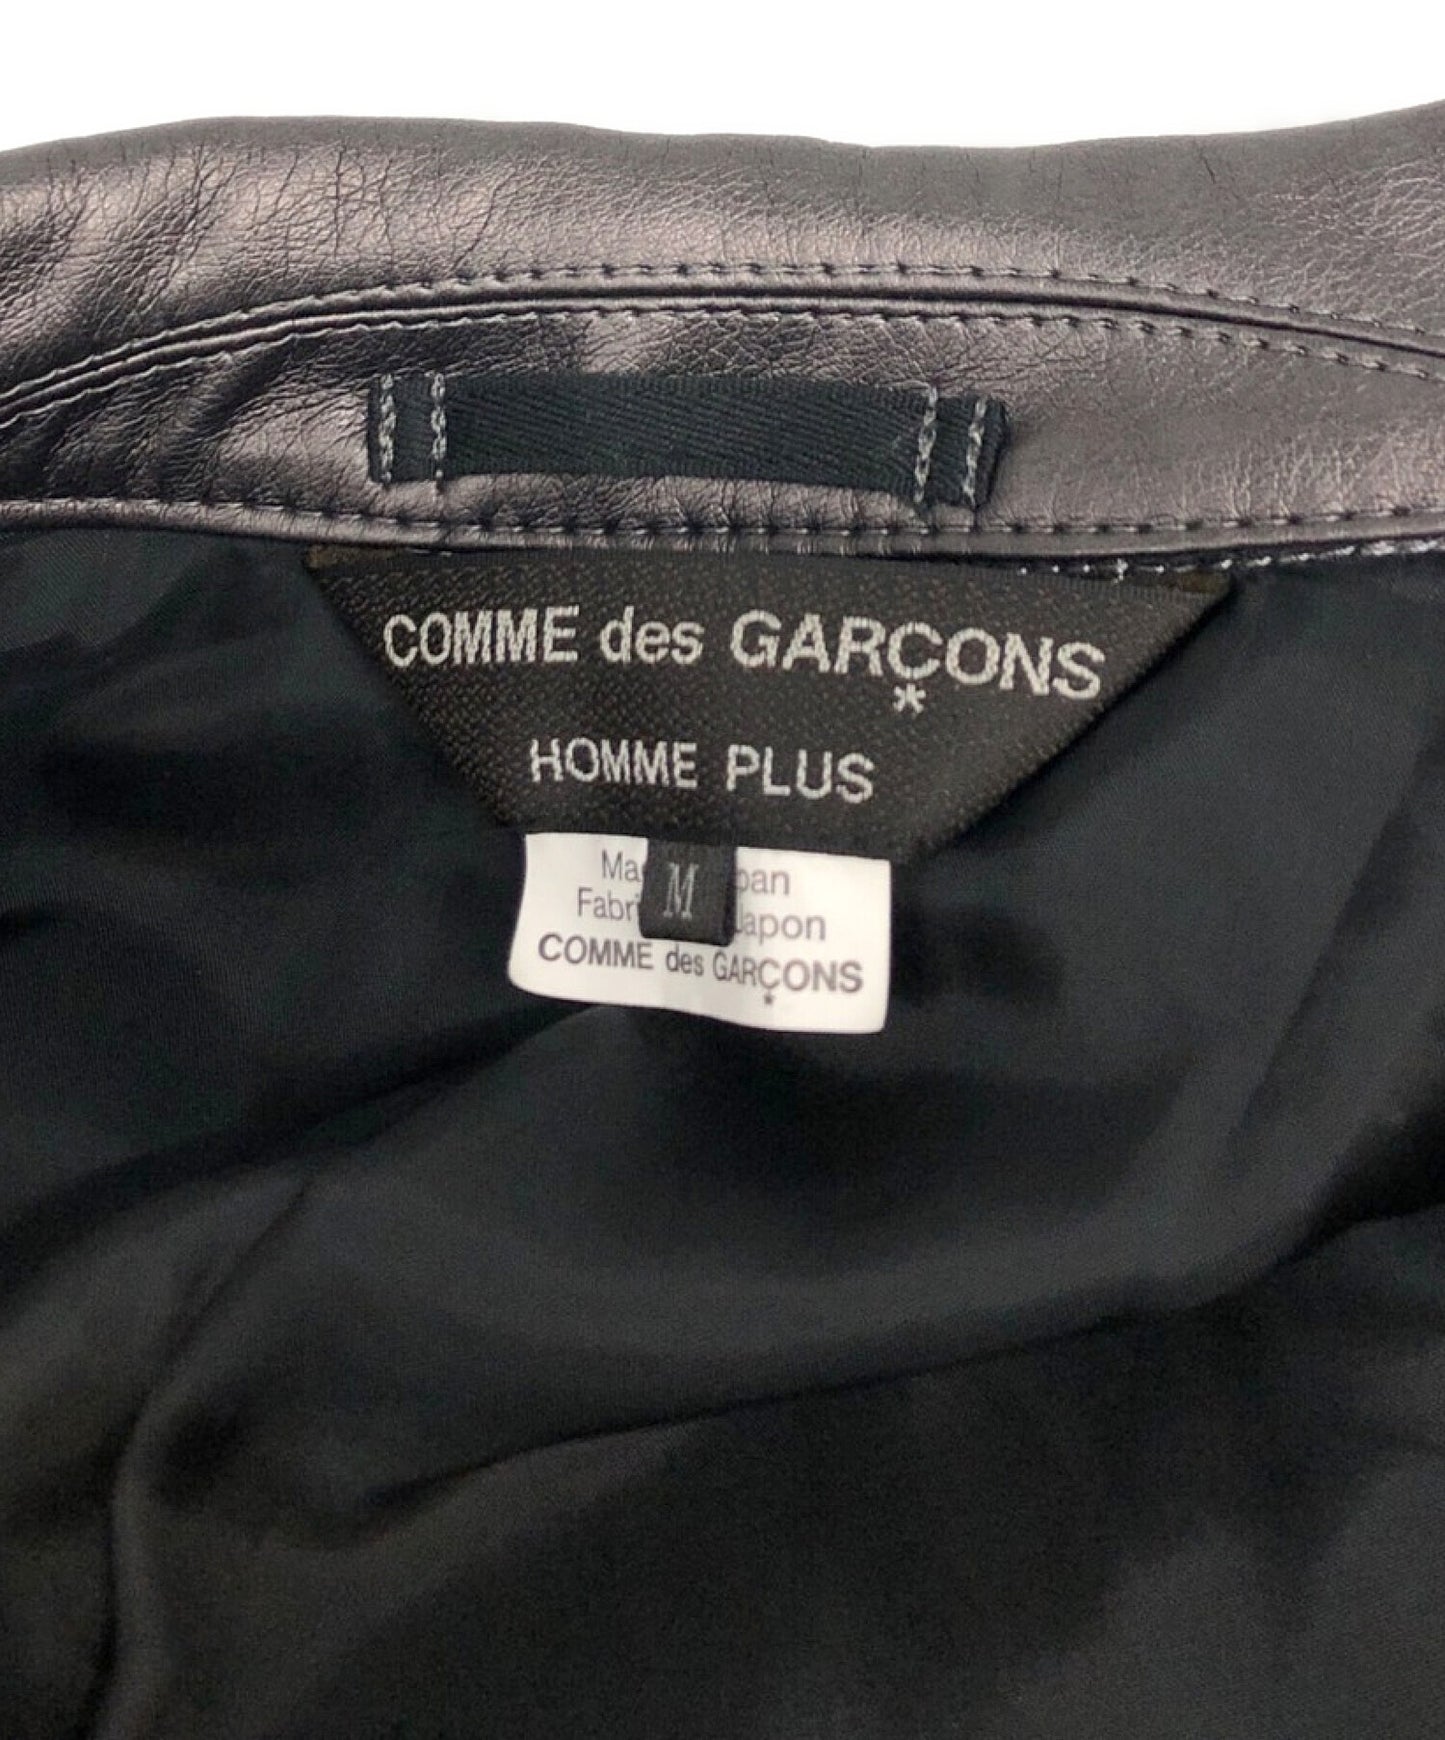 Comme des Garcons Homme Plus合成皮革骑自行车的夹克PG-J016